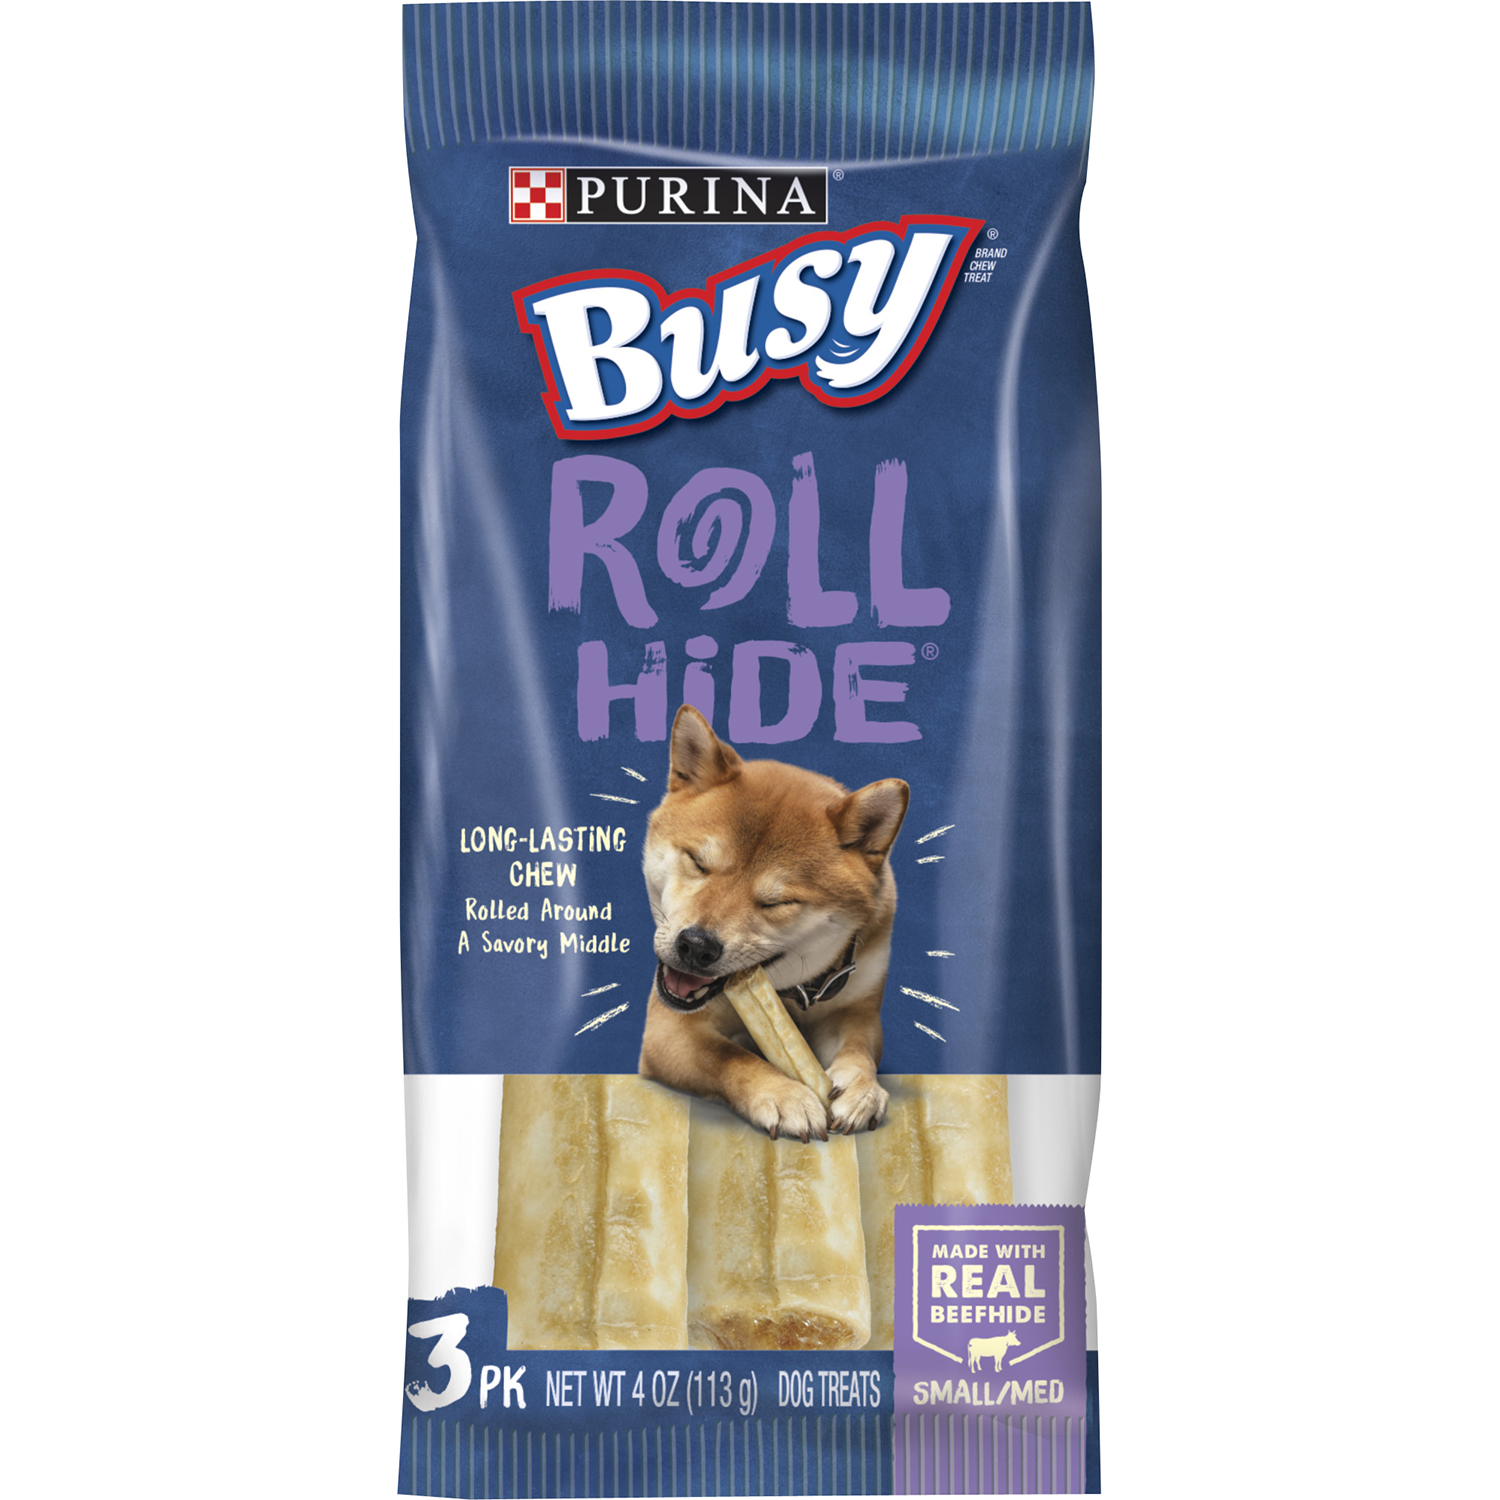 Busy Bone Rollhide Busy Dog Treats Small/Medium 4 oz. Bag